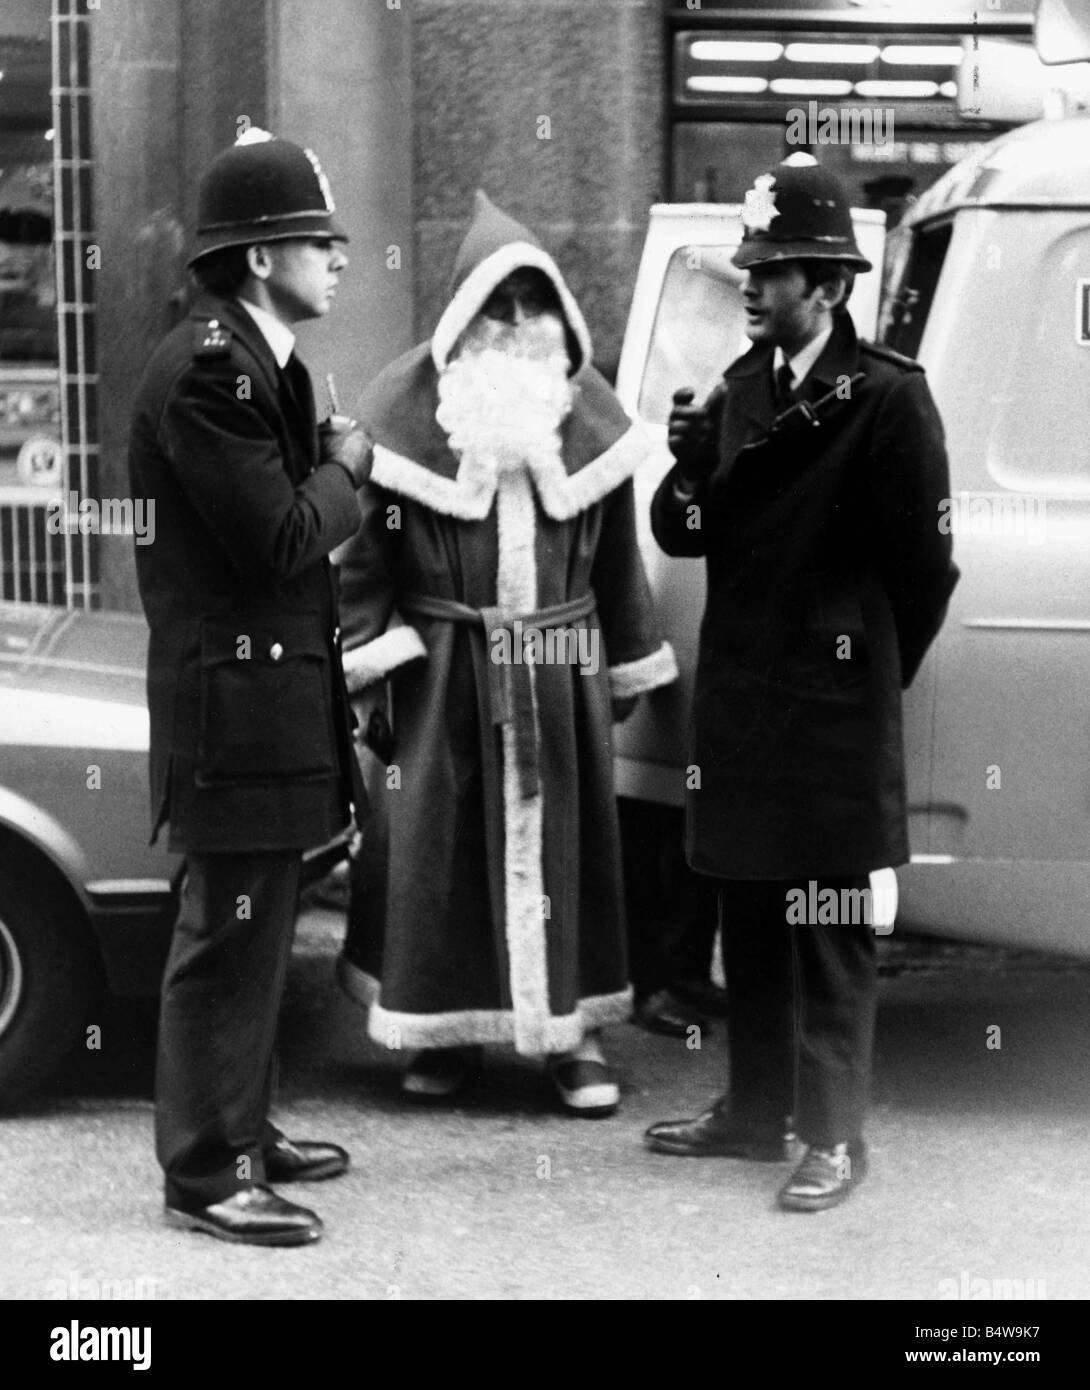 Polizisten zu sprechen, an den Weihnachtsmann outise Kaufhaus Harrods in London nach geklaut werden, denn Obstruktion Santa bot mit Passanten darstellen, während ein Kollege nahm Dezember 1982 Bilder Mirrorpix Stockfoto